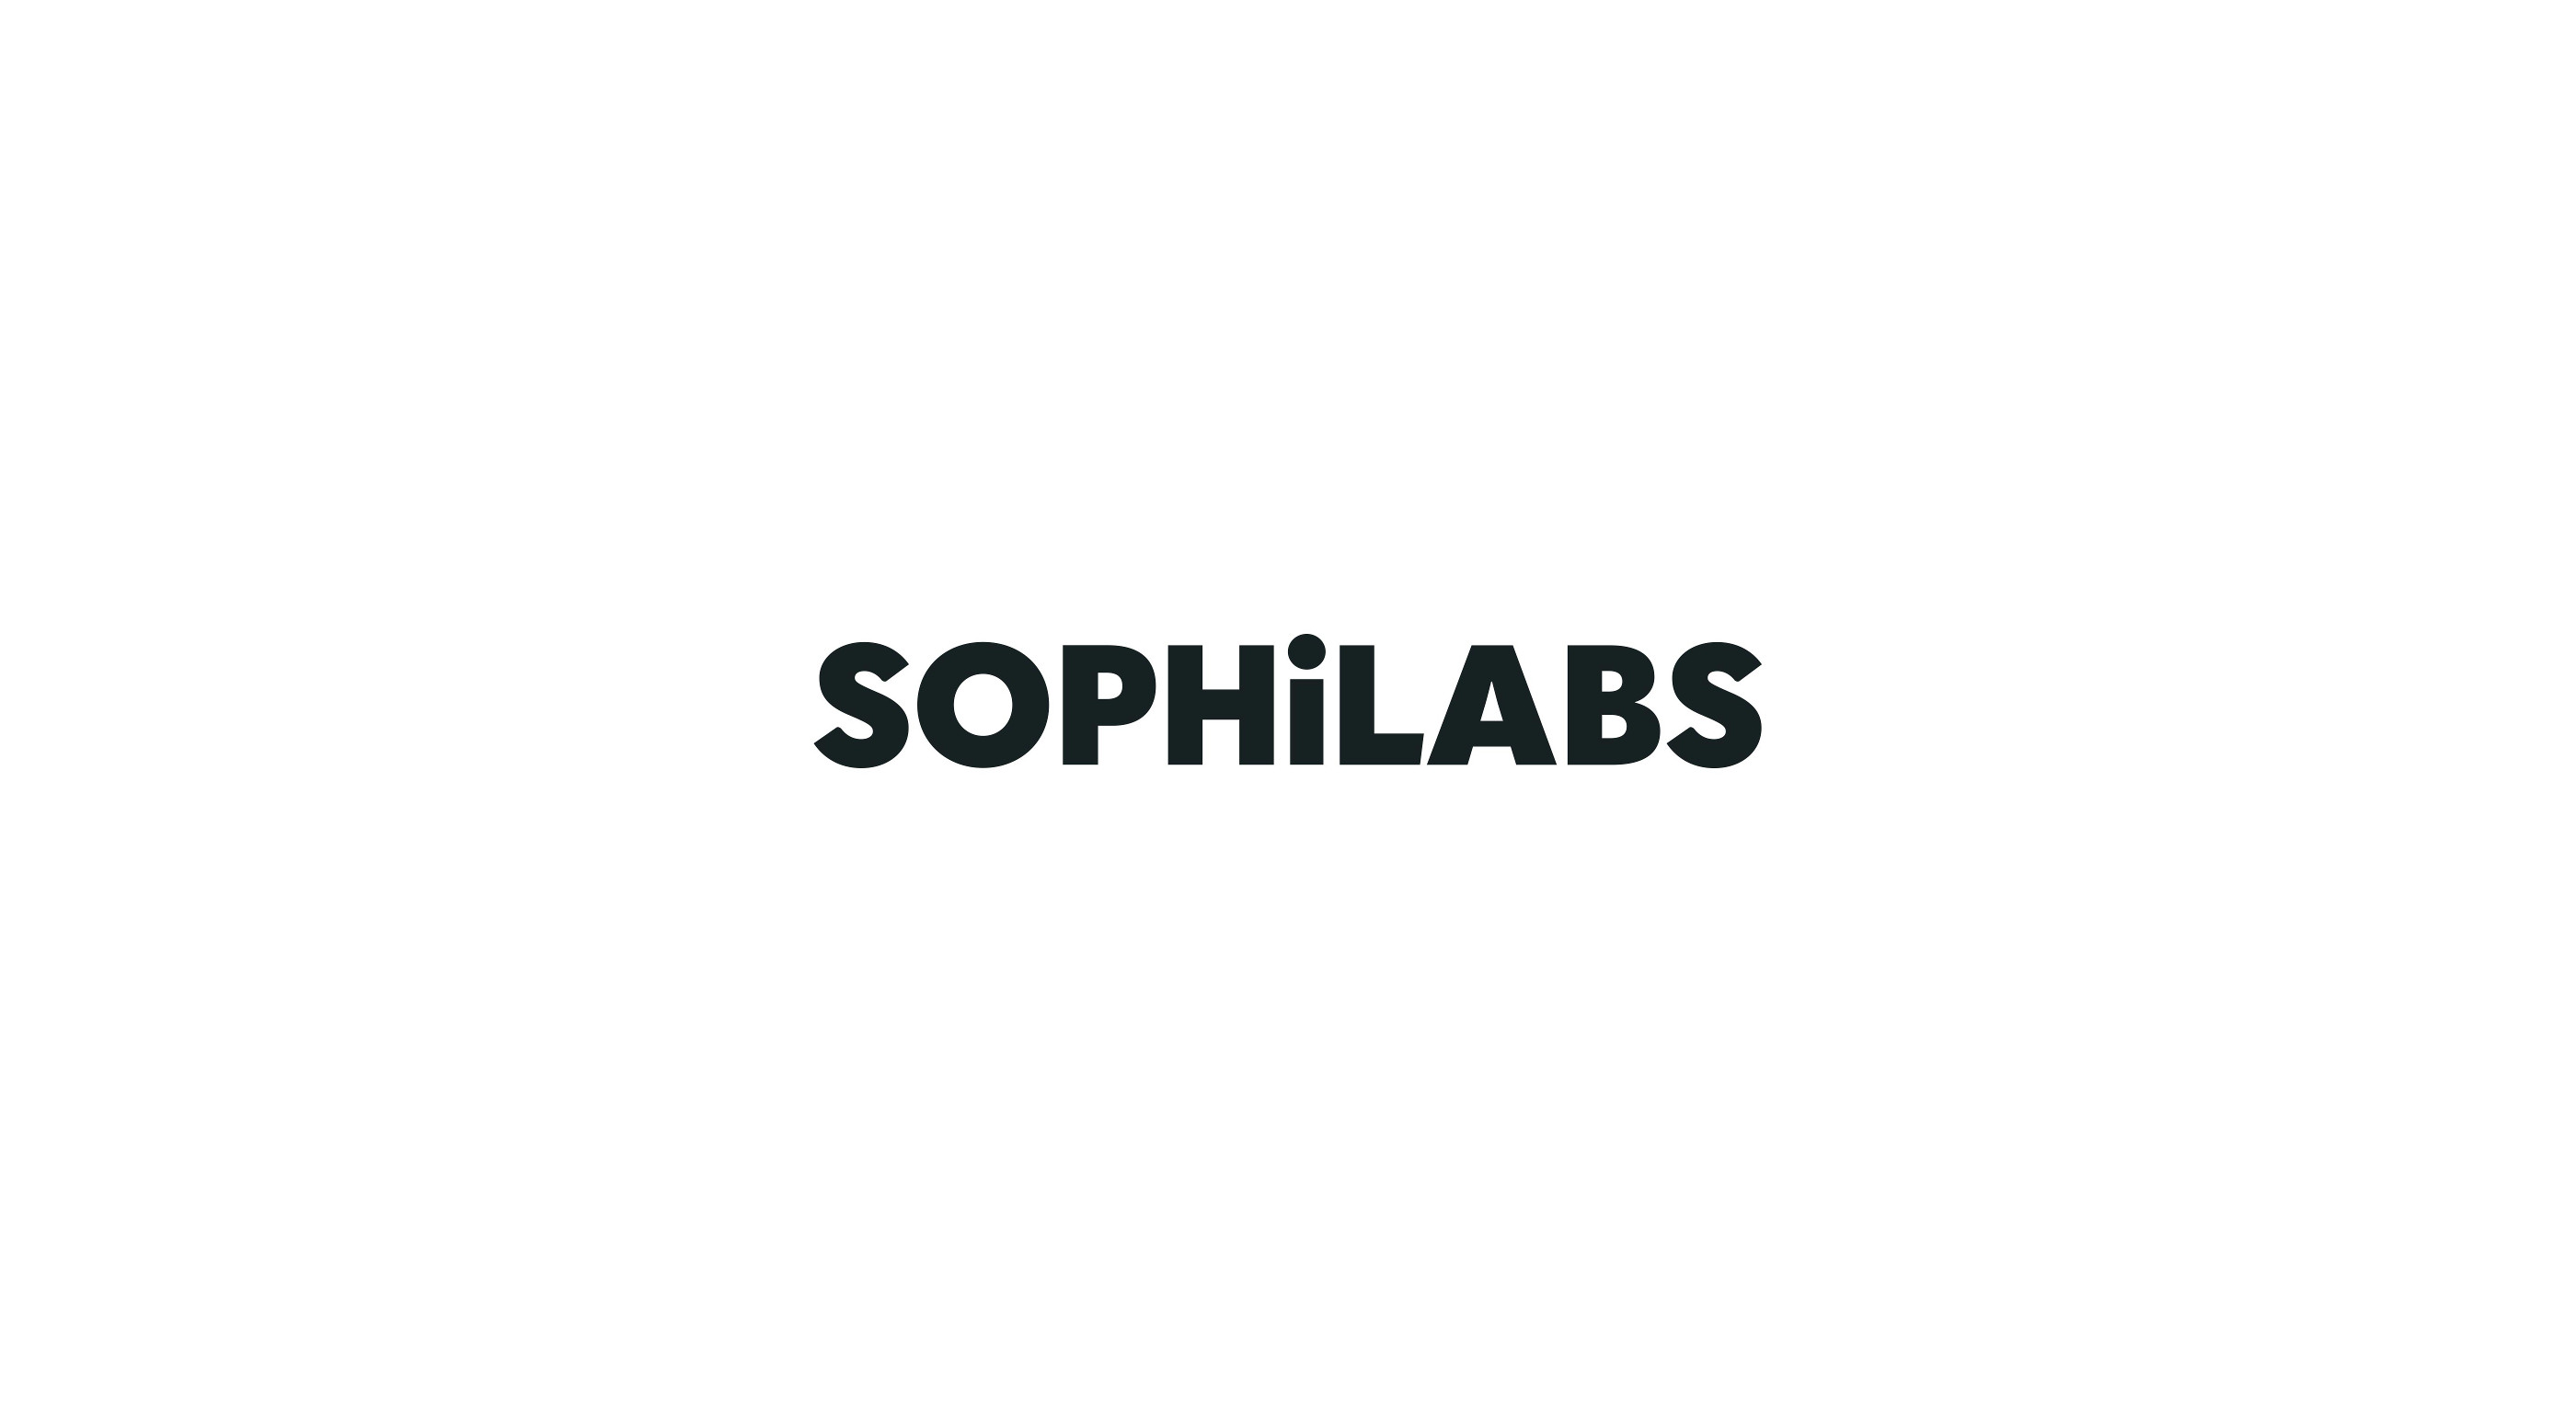 Sophilabs' wordmark